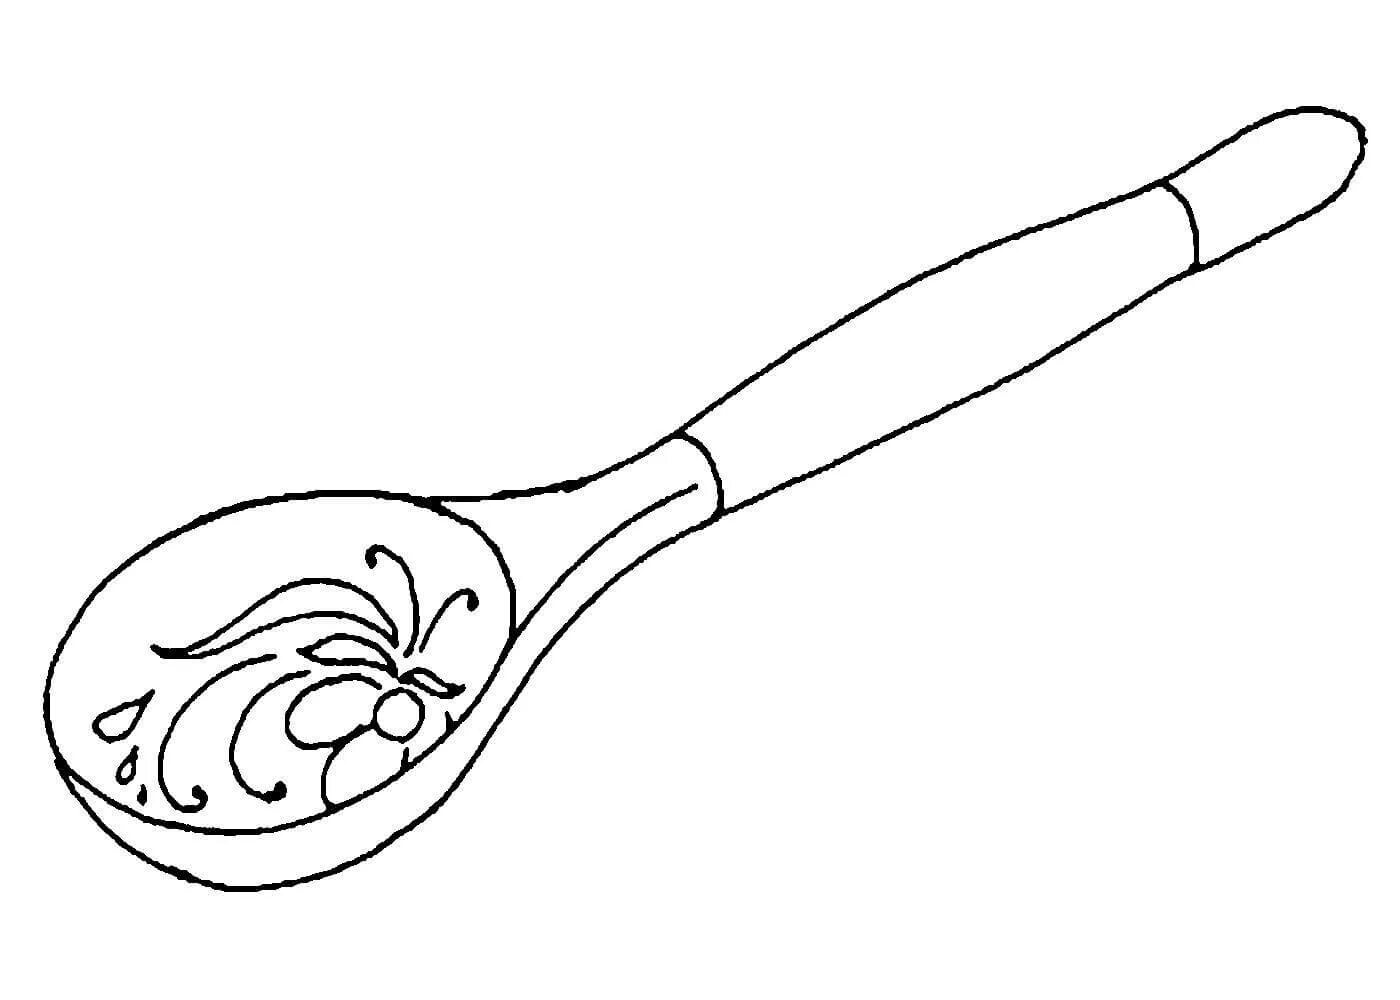 Children's wooden spoon #22